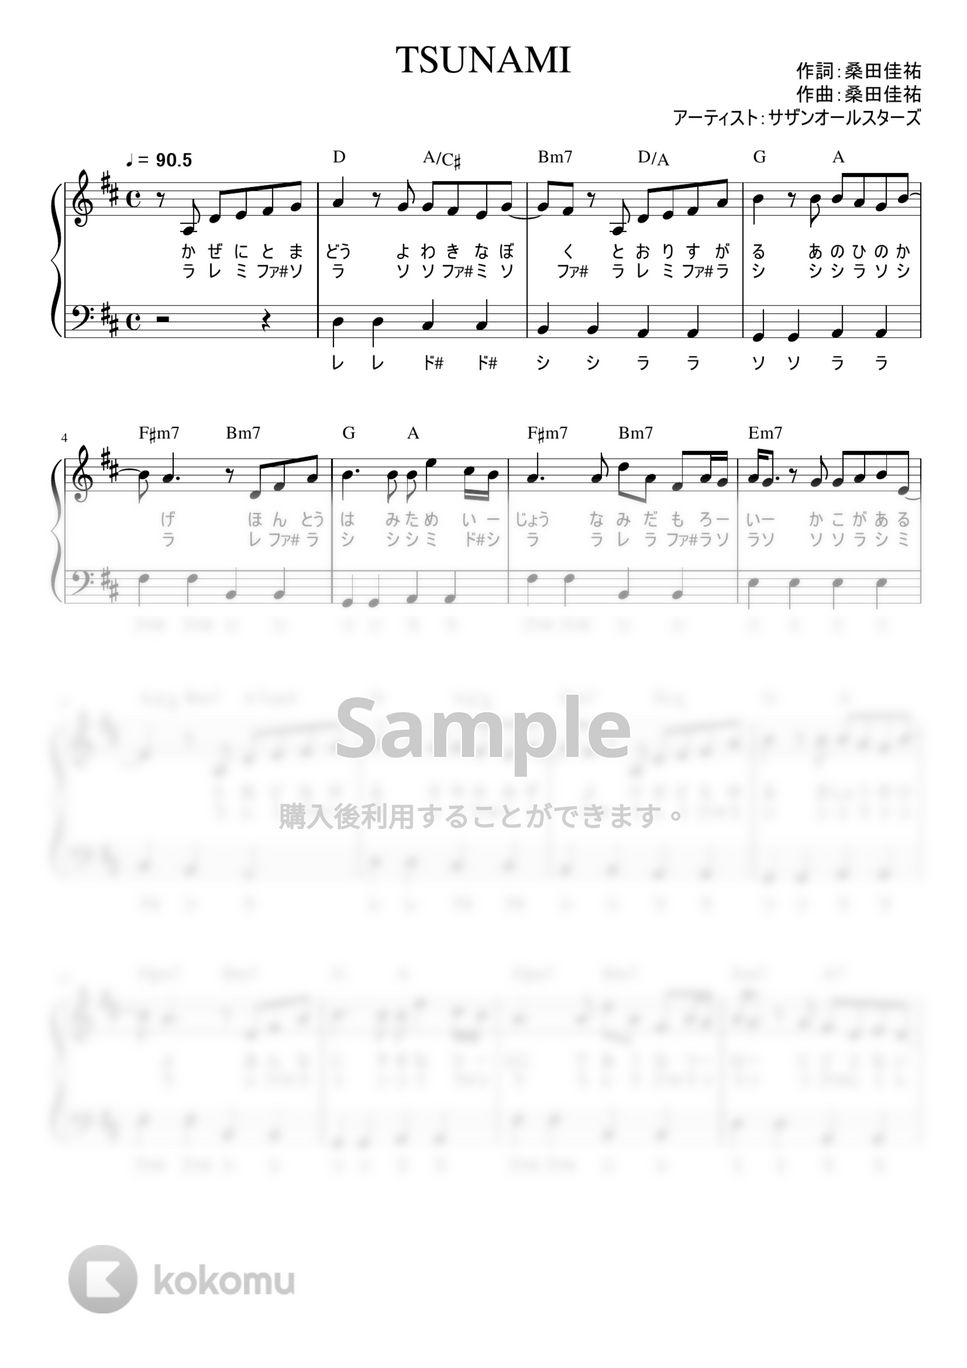 サザンオールスターズ - TSUNAMI (かんたん / 歌詞付き / ドレミ付き / 初心者) by piano.tokyo